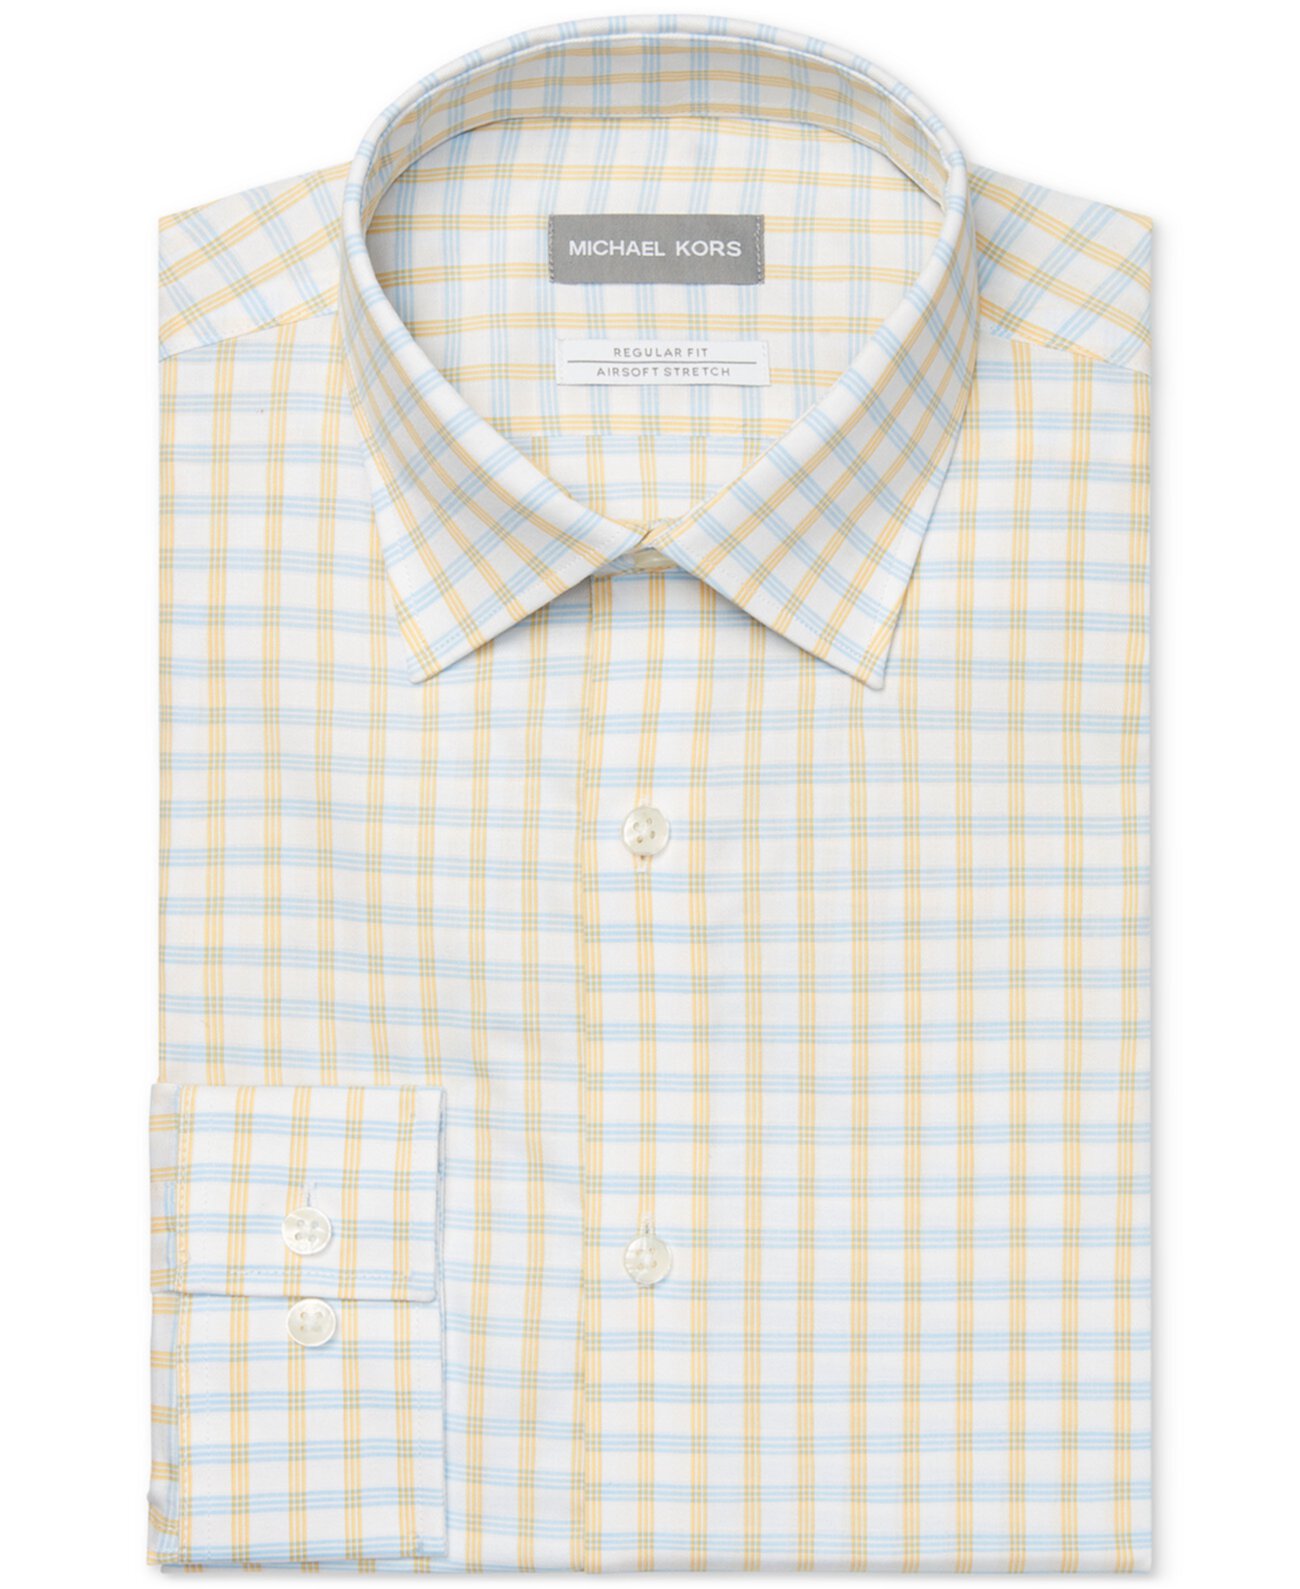 Мужская классическая / стандартная классическая классическая рубашка в клетку для страйкбола без железа, стрейч в клетку с лимонной глазурью Michael Kors